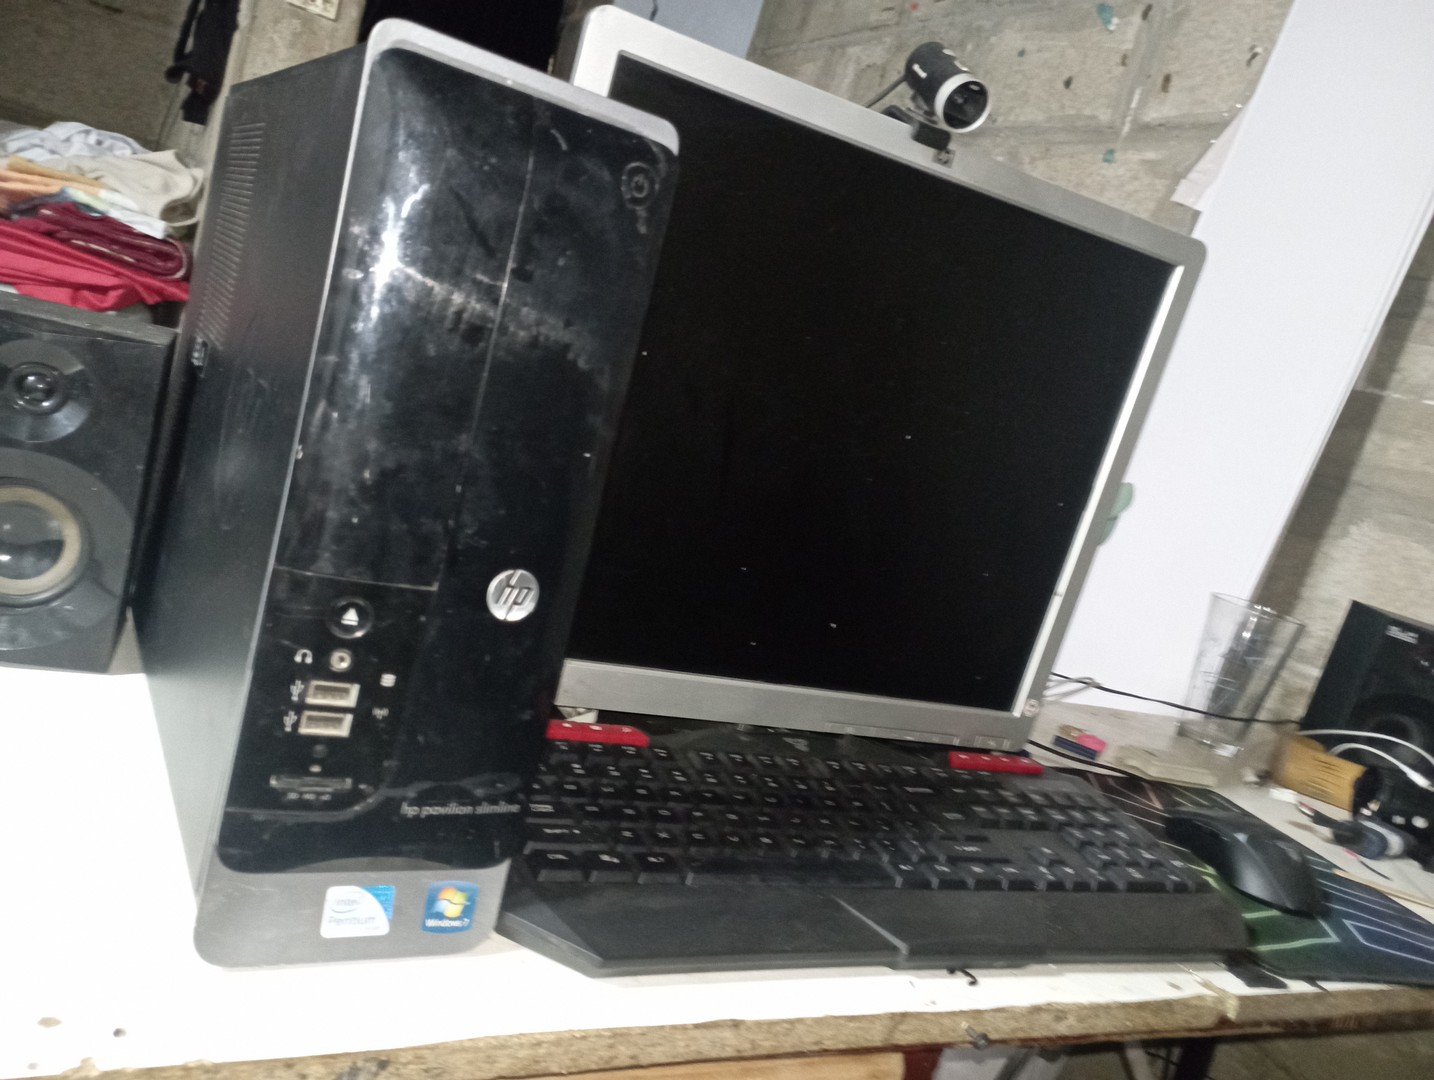 computadoras y laptops - Computadora HP como nueva 